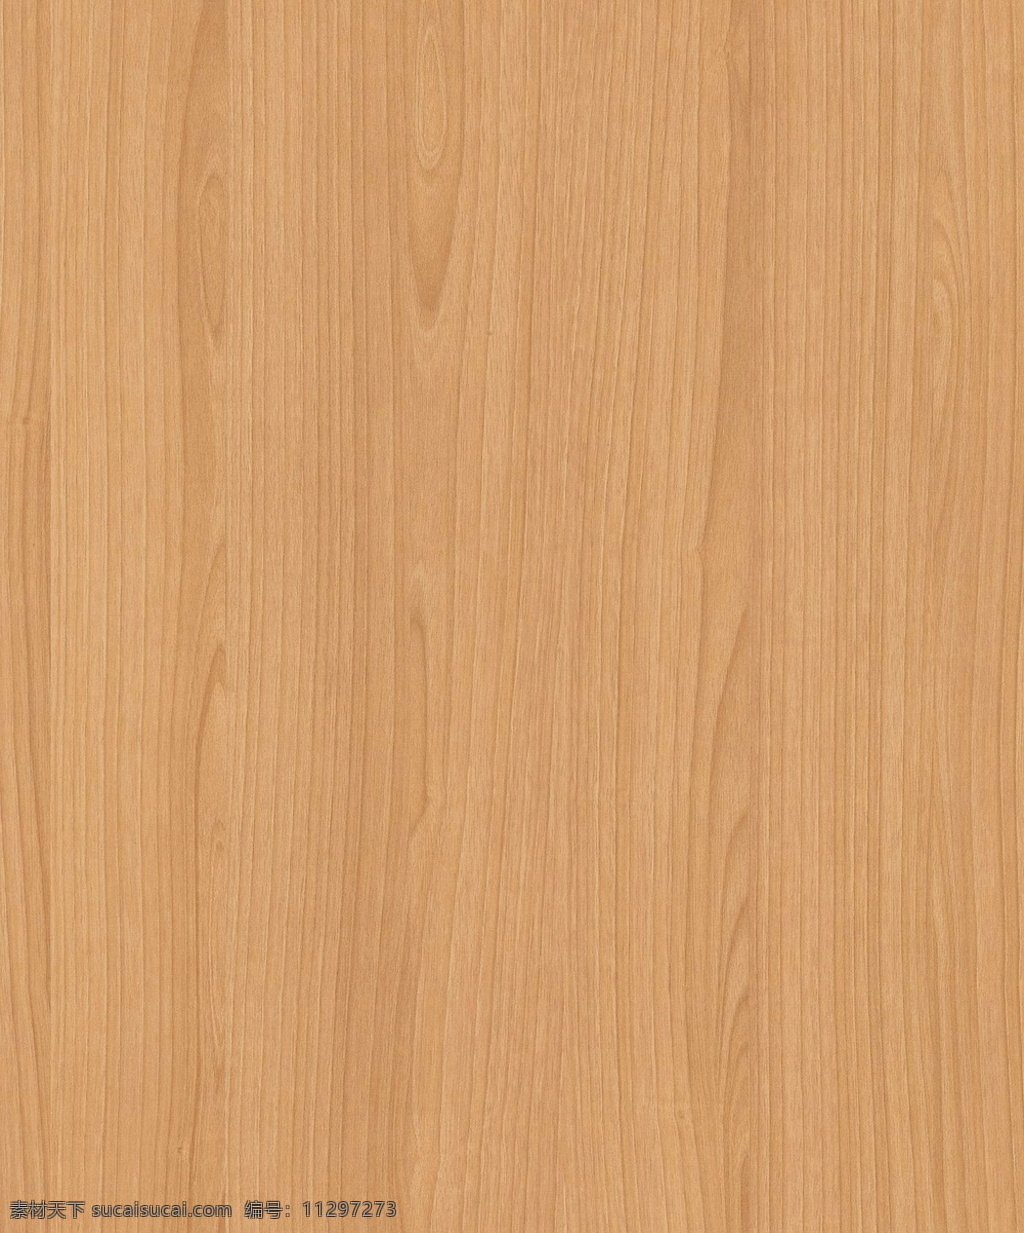 318 木材 木纹 效果图 3d材质 3d模型下载 木纹素材 木纹效果图 3d材质图 3d模型素材 材质贴图